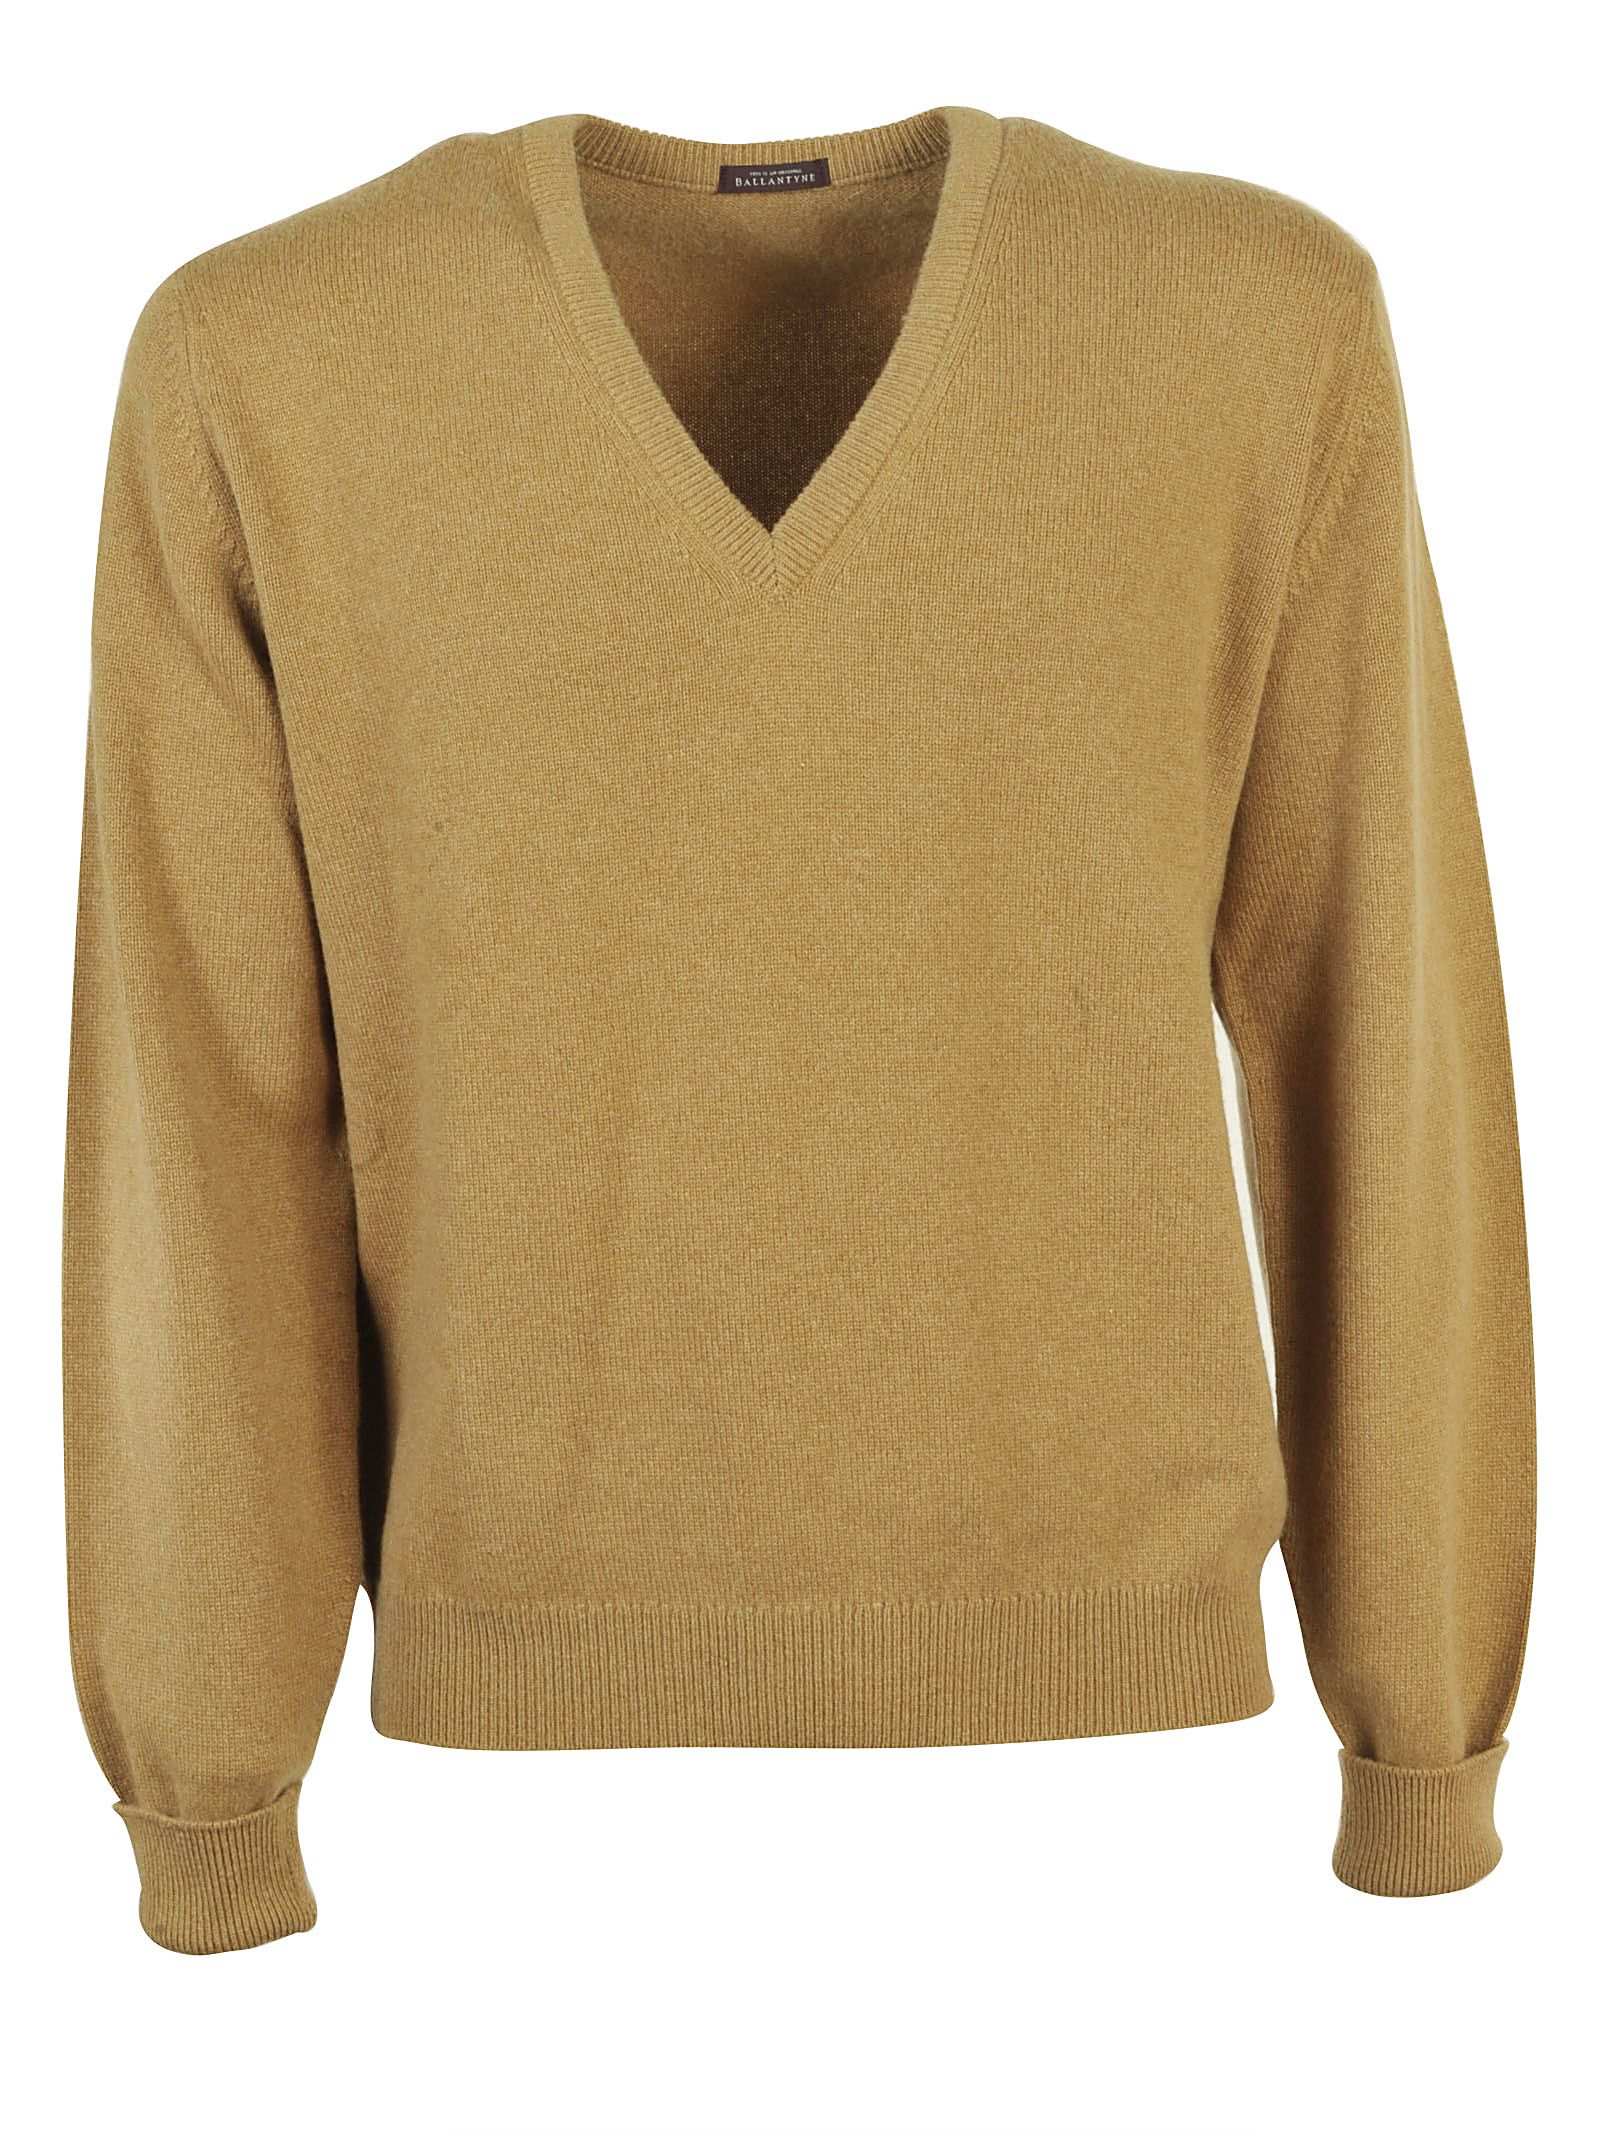 Ballantyne - Ballantyne Vicuña V Neck Sweater - Beige, Men's Sweaters ...